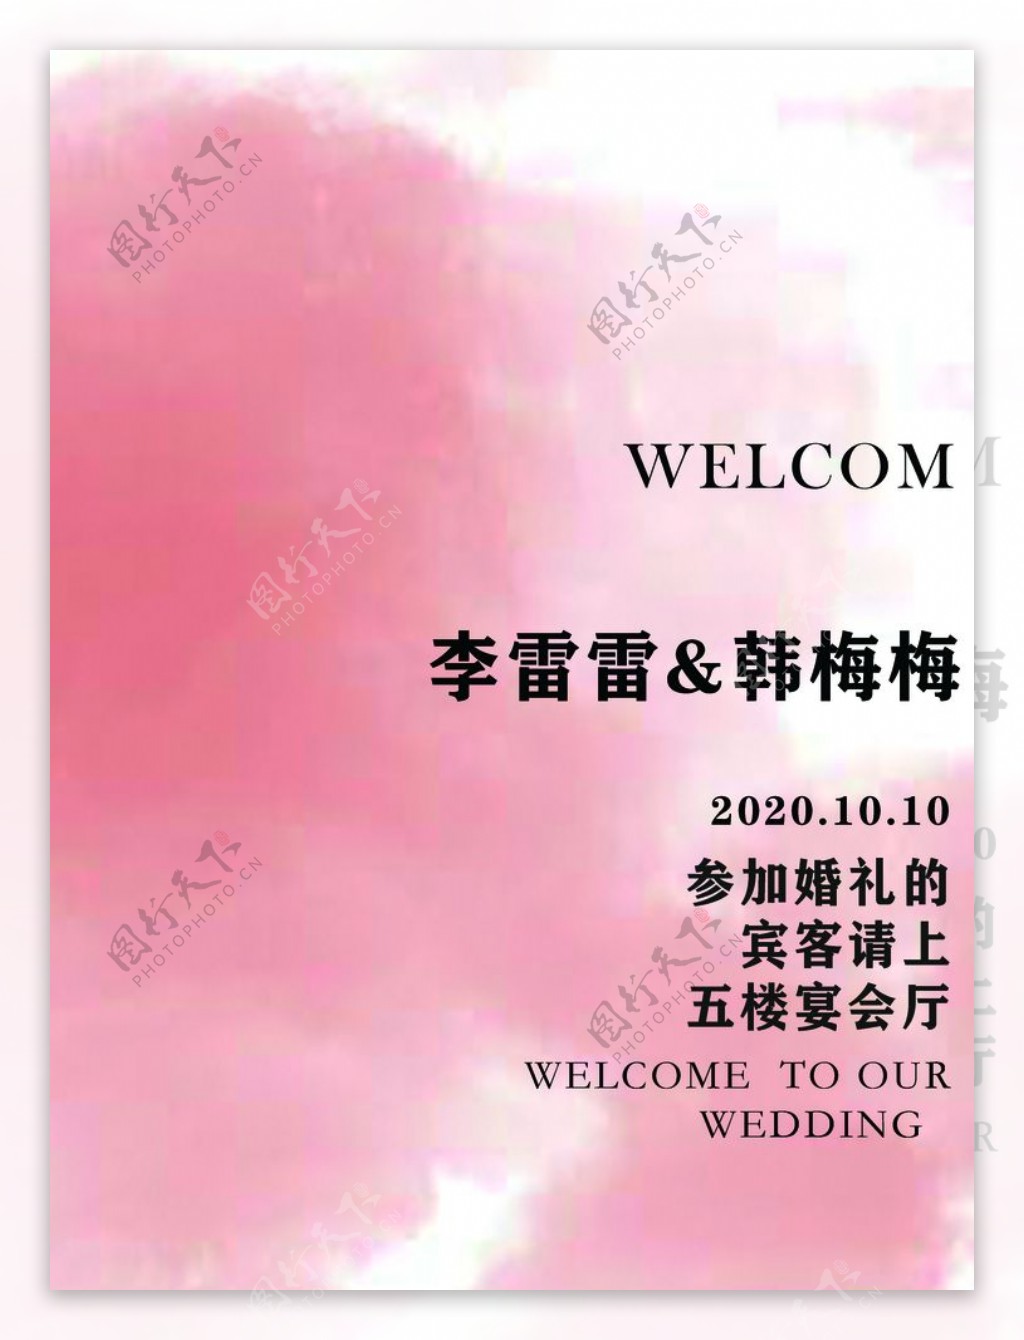 粉红色水彩背景婚礼迎宾牌图片